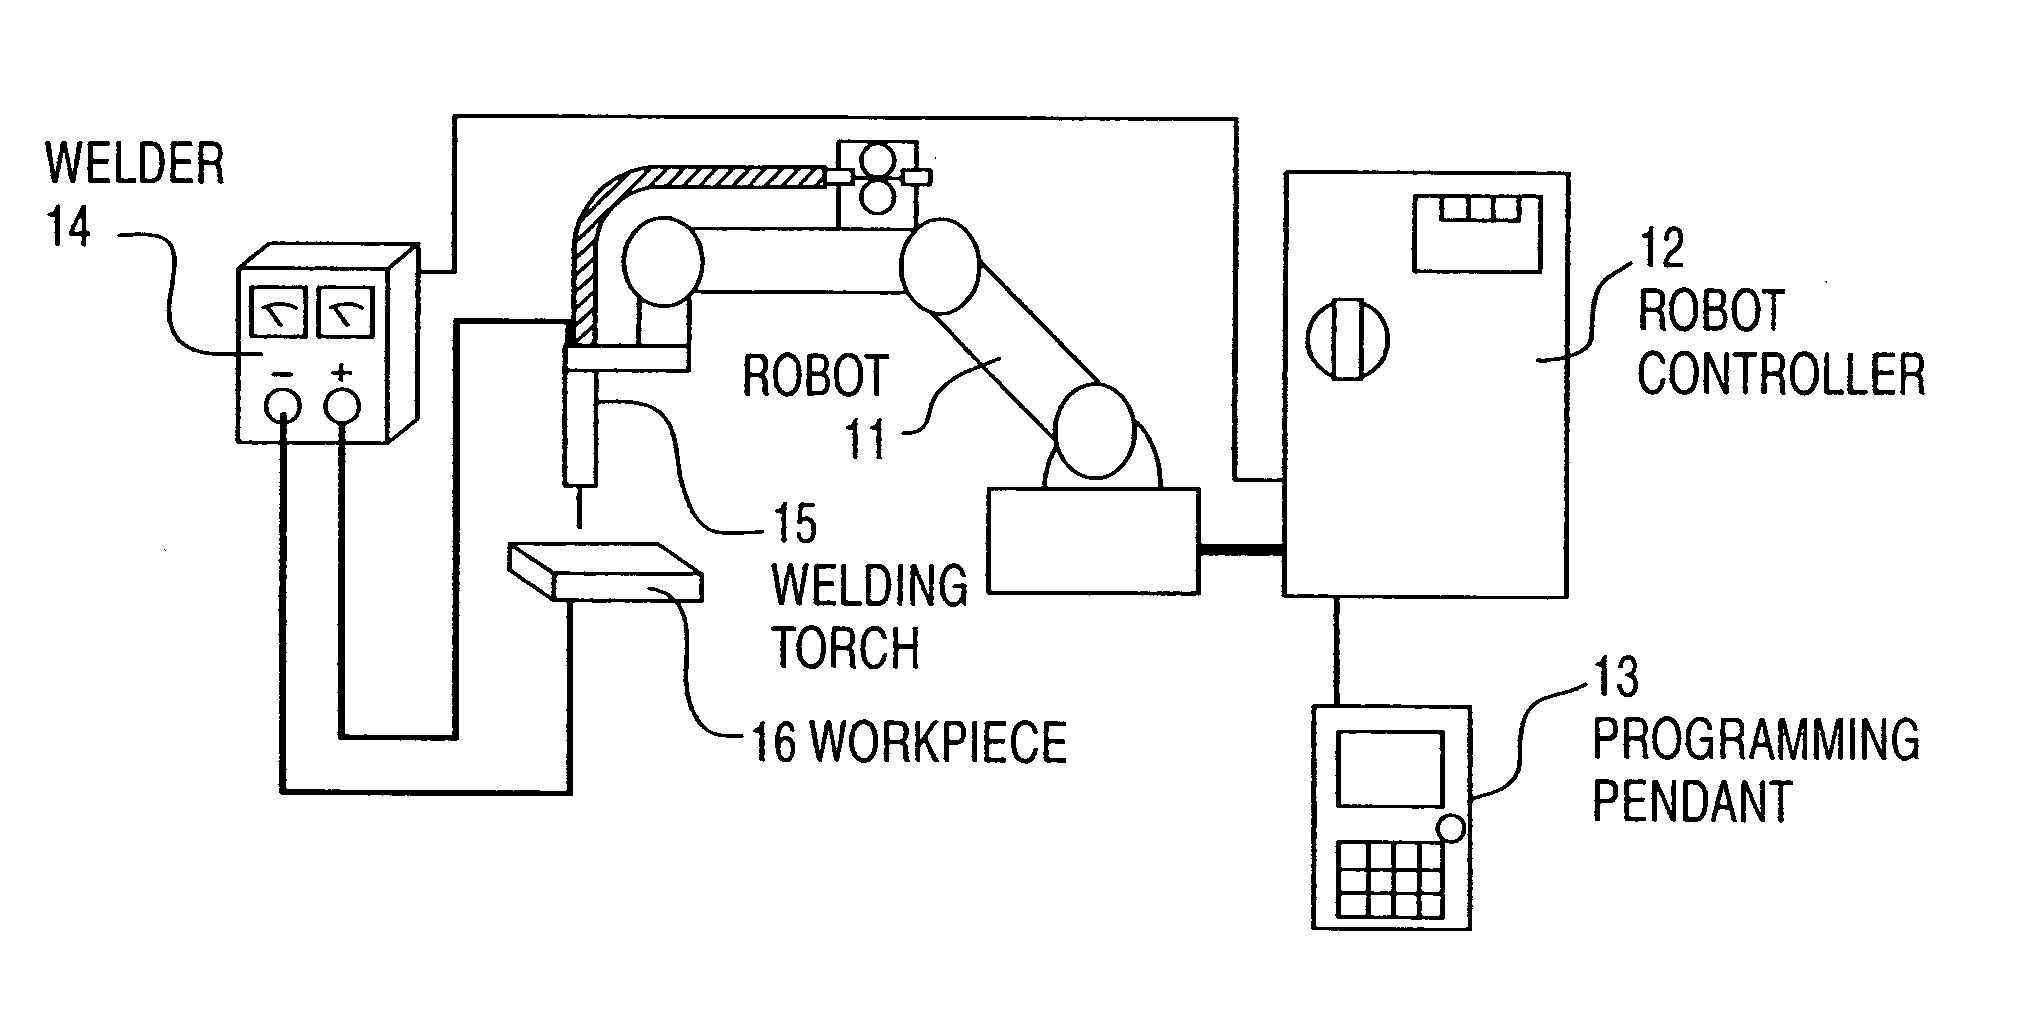 Robot controller